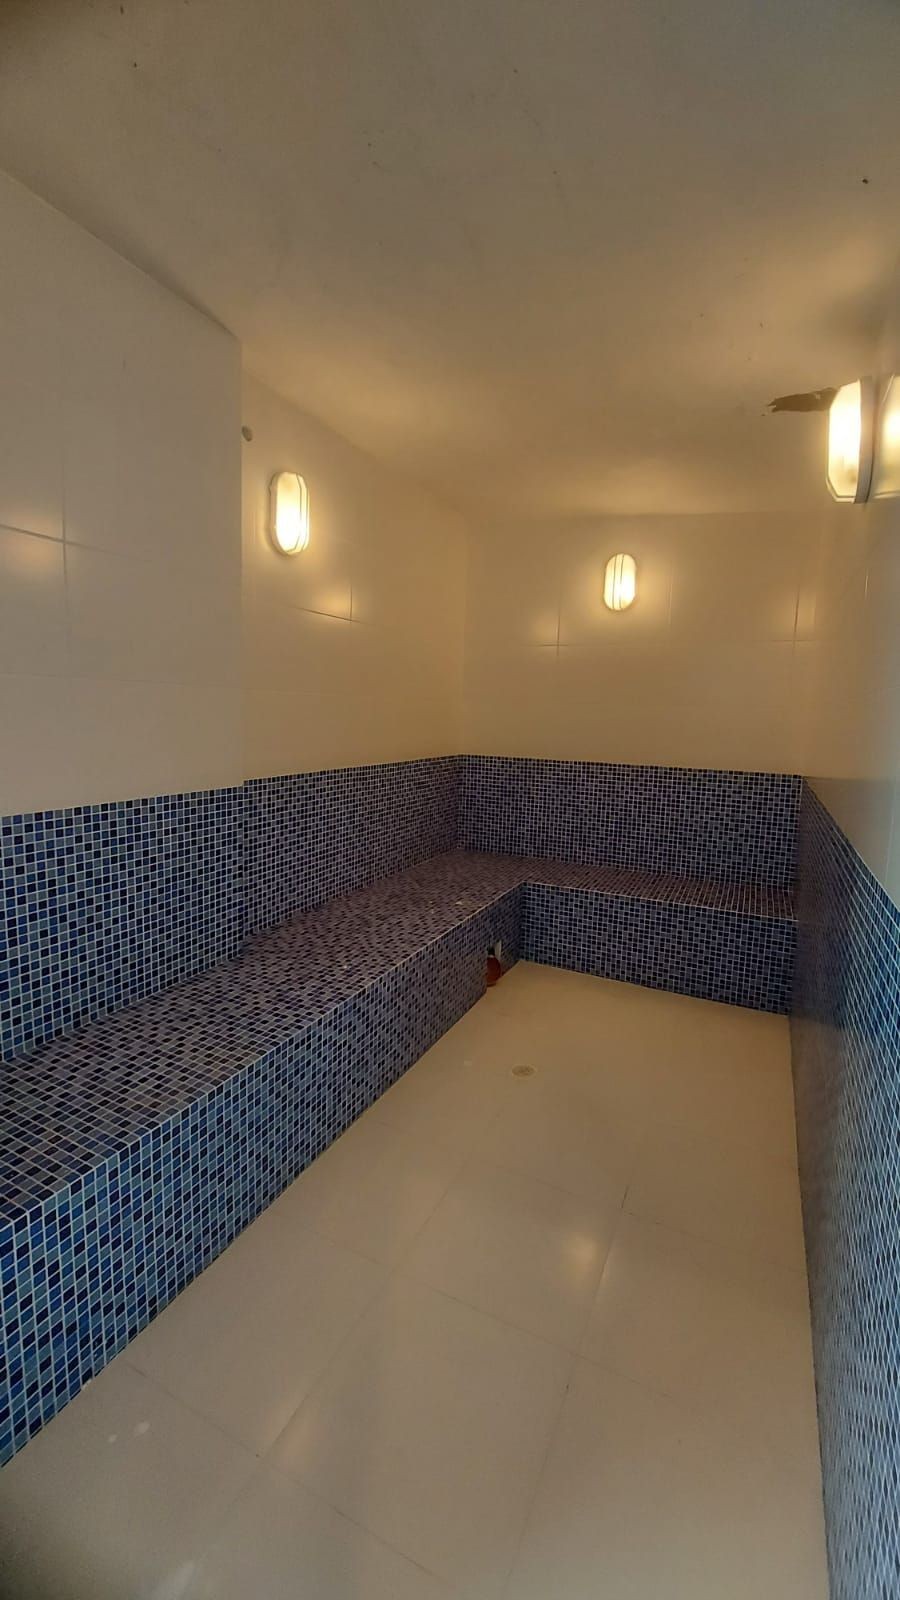 Apartamento Mobiliado e Decorado Com 3 Suítes Localizado no Centro de Balneário Camboriú - SC